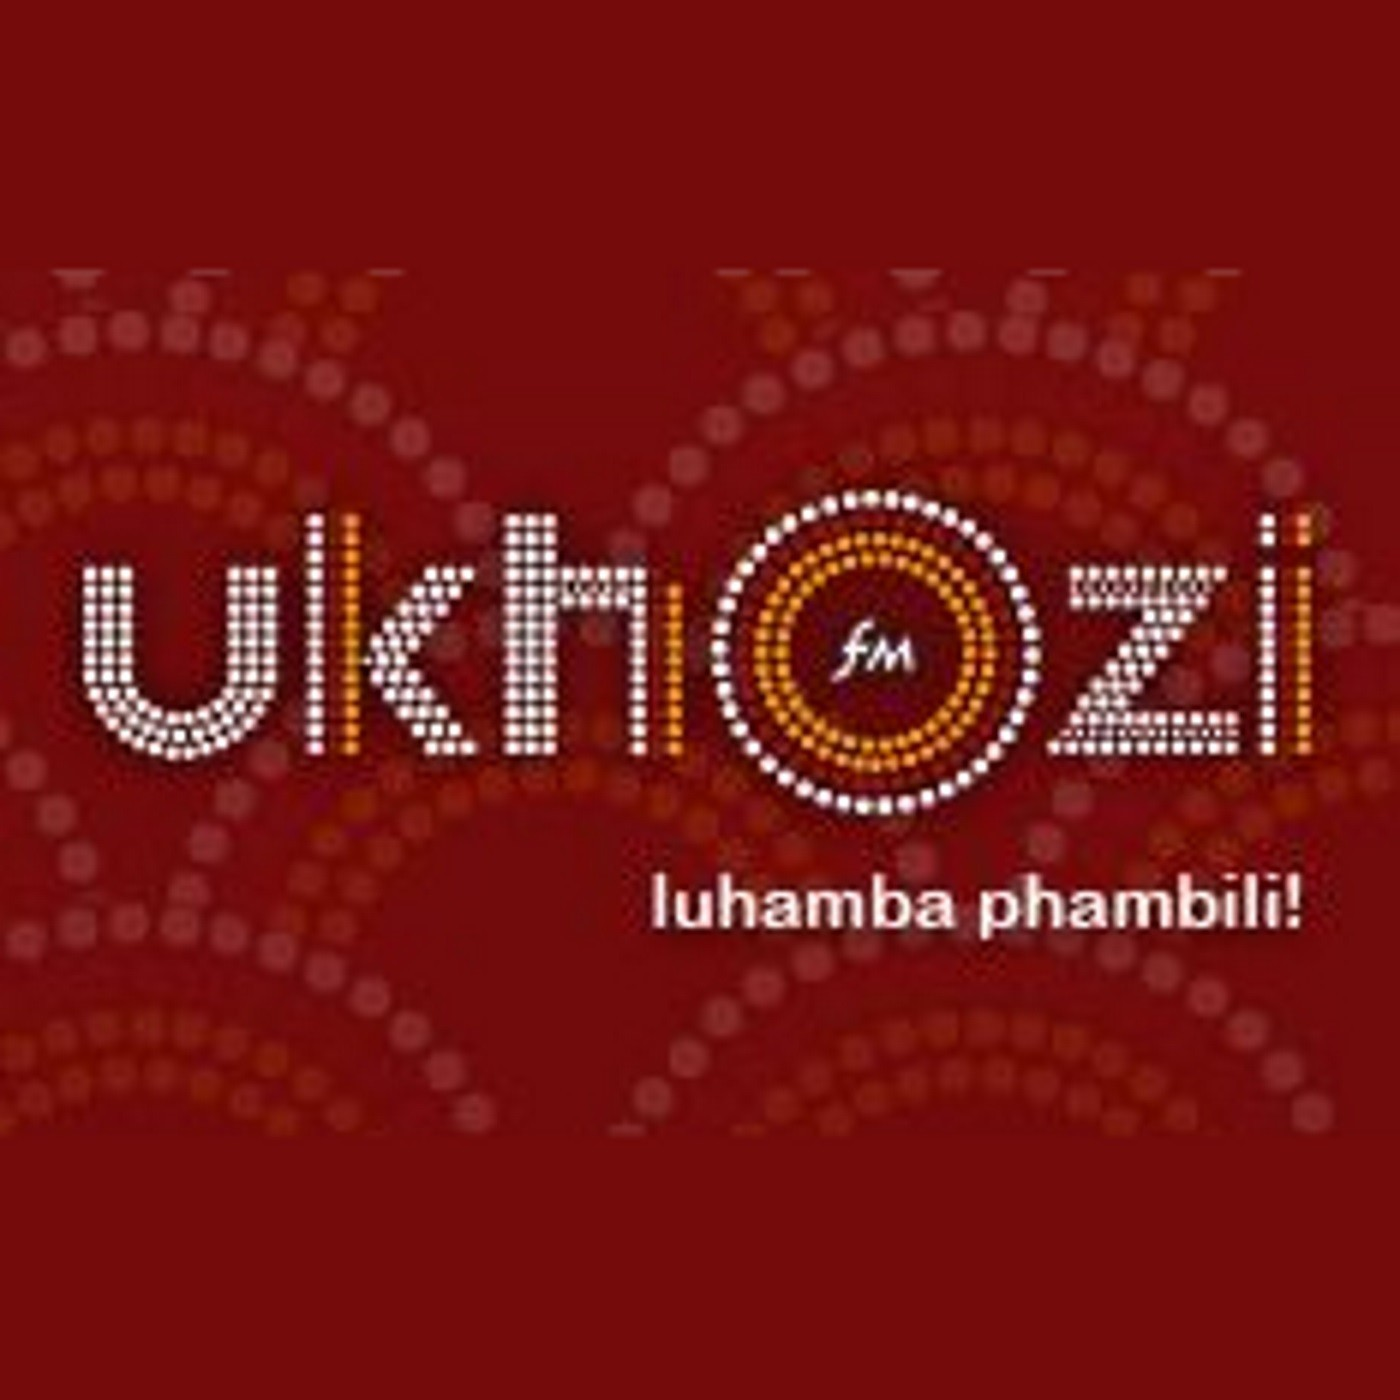 We spent time with Khathaza 'Sibonile Ngubane' woZalo chatting about the man behind the troubles on Uzalo.